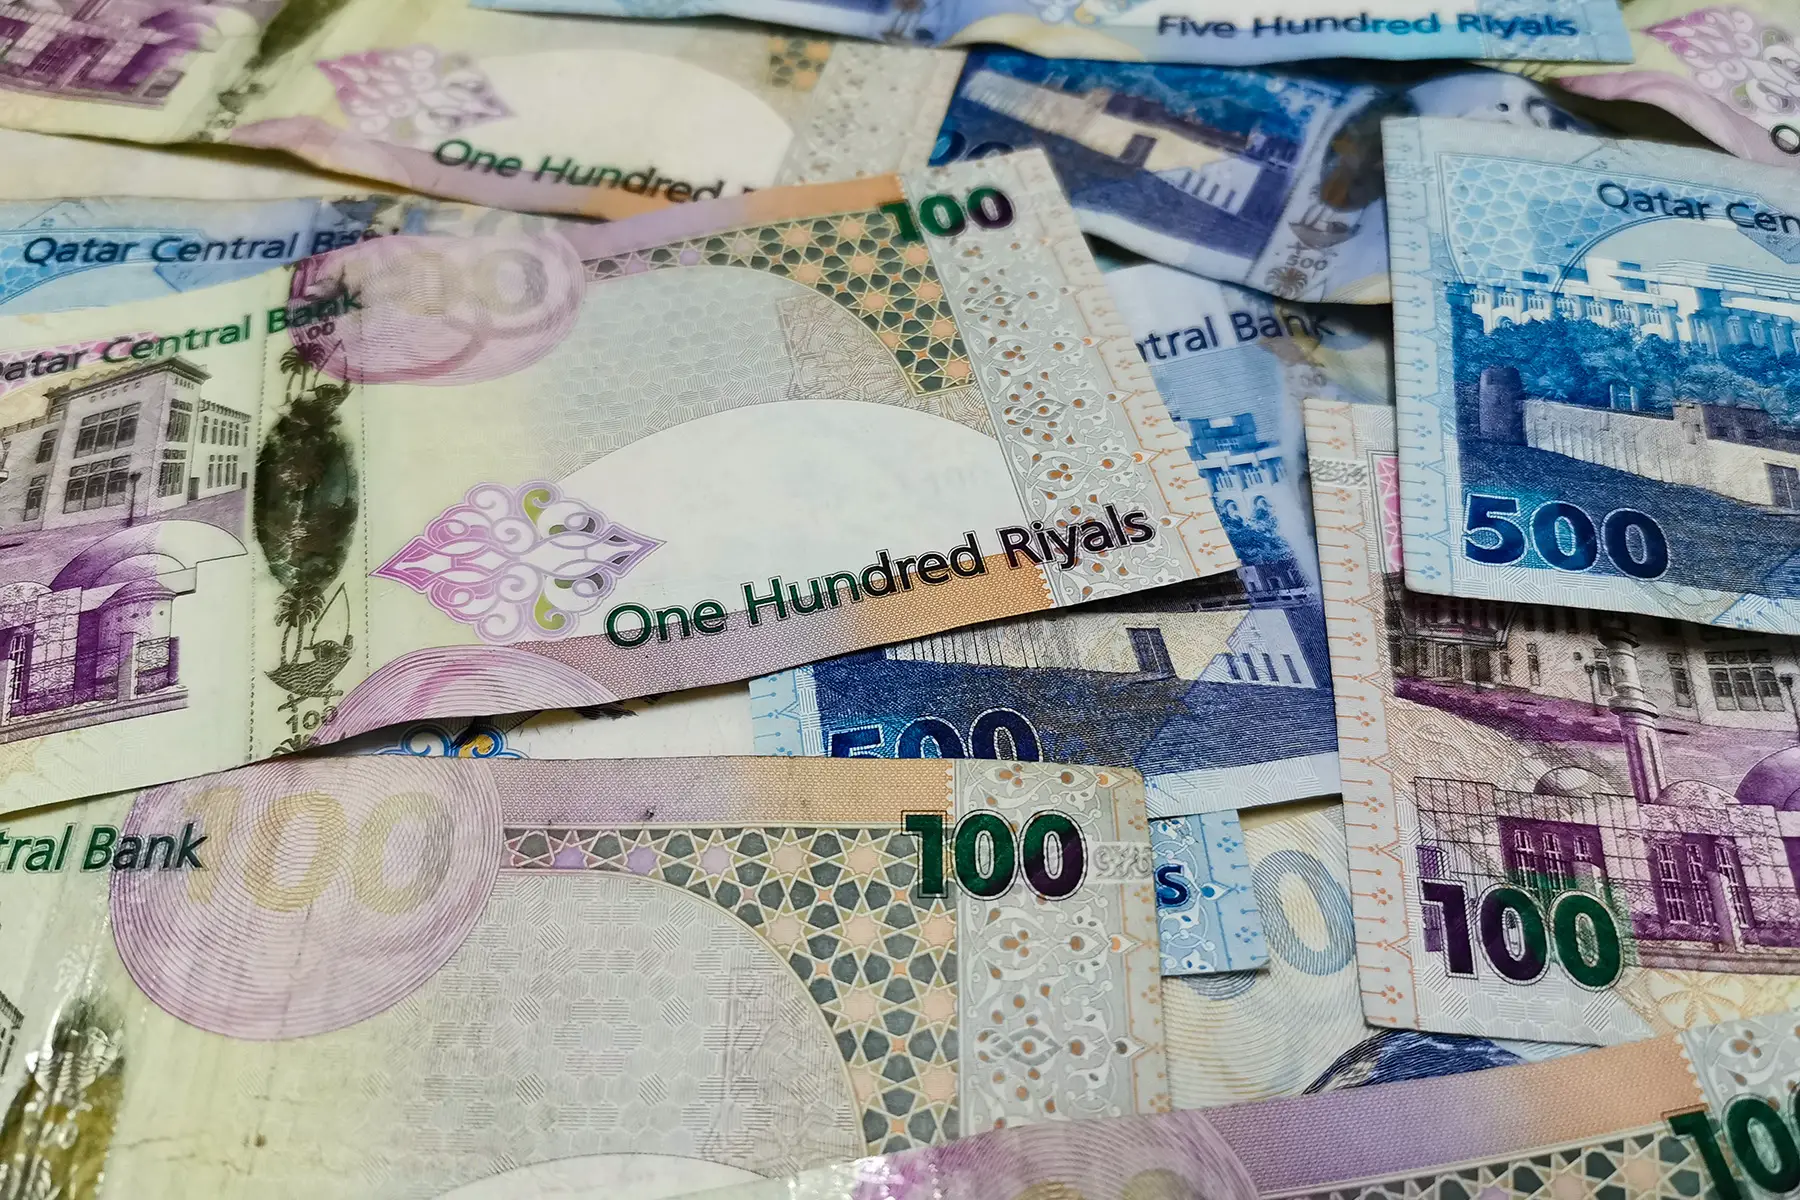 Qatari riyal bills